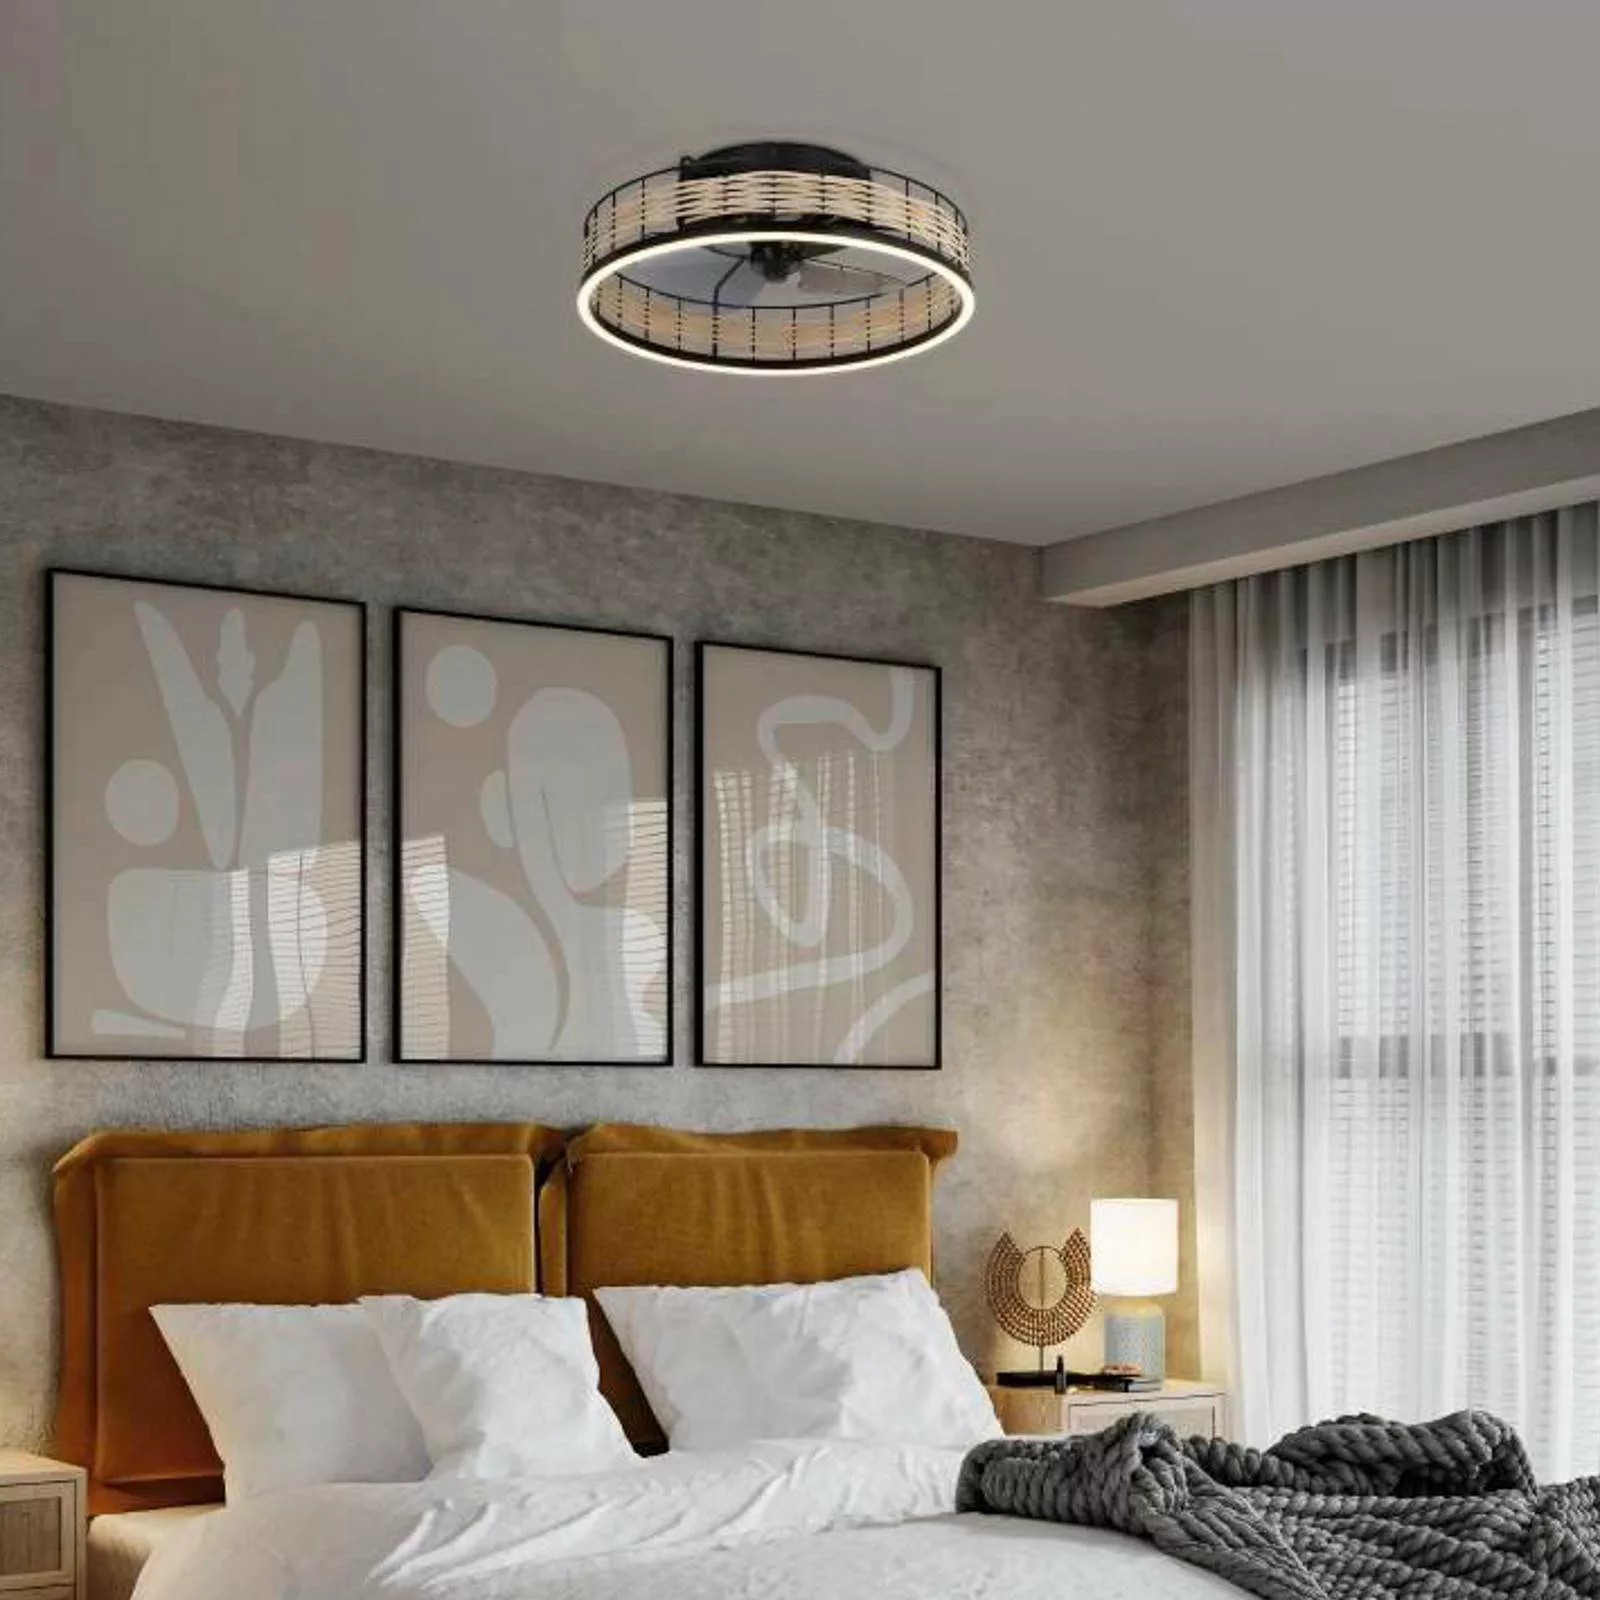 EGLO Frana LED-Deckenleuchte mit Ventilator günstig online kaufen